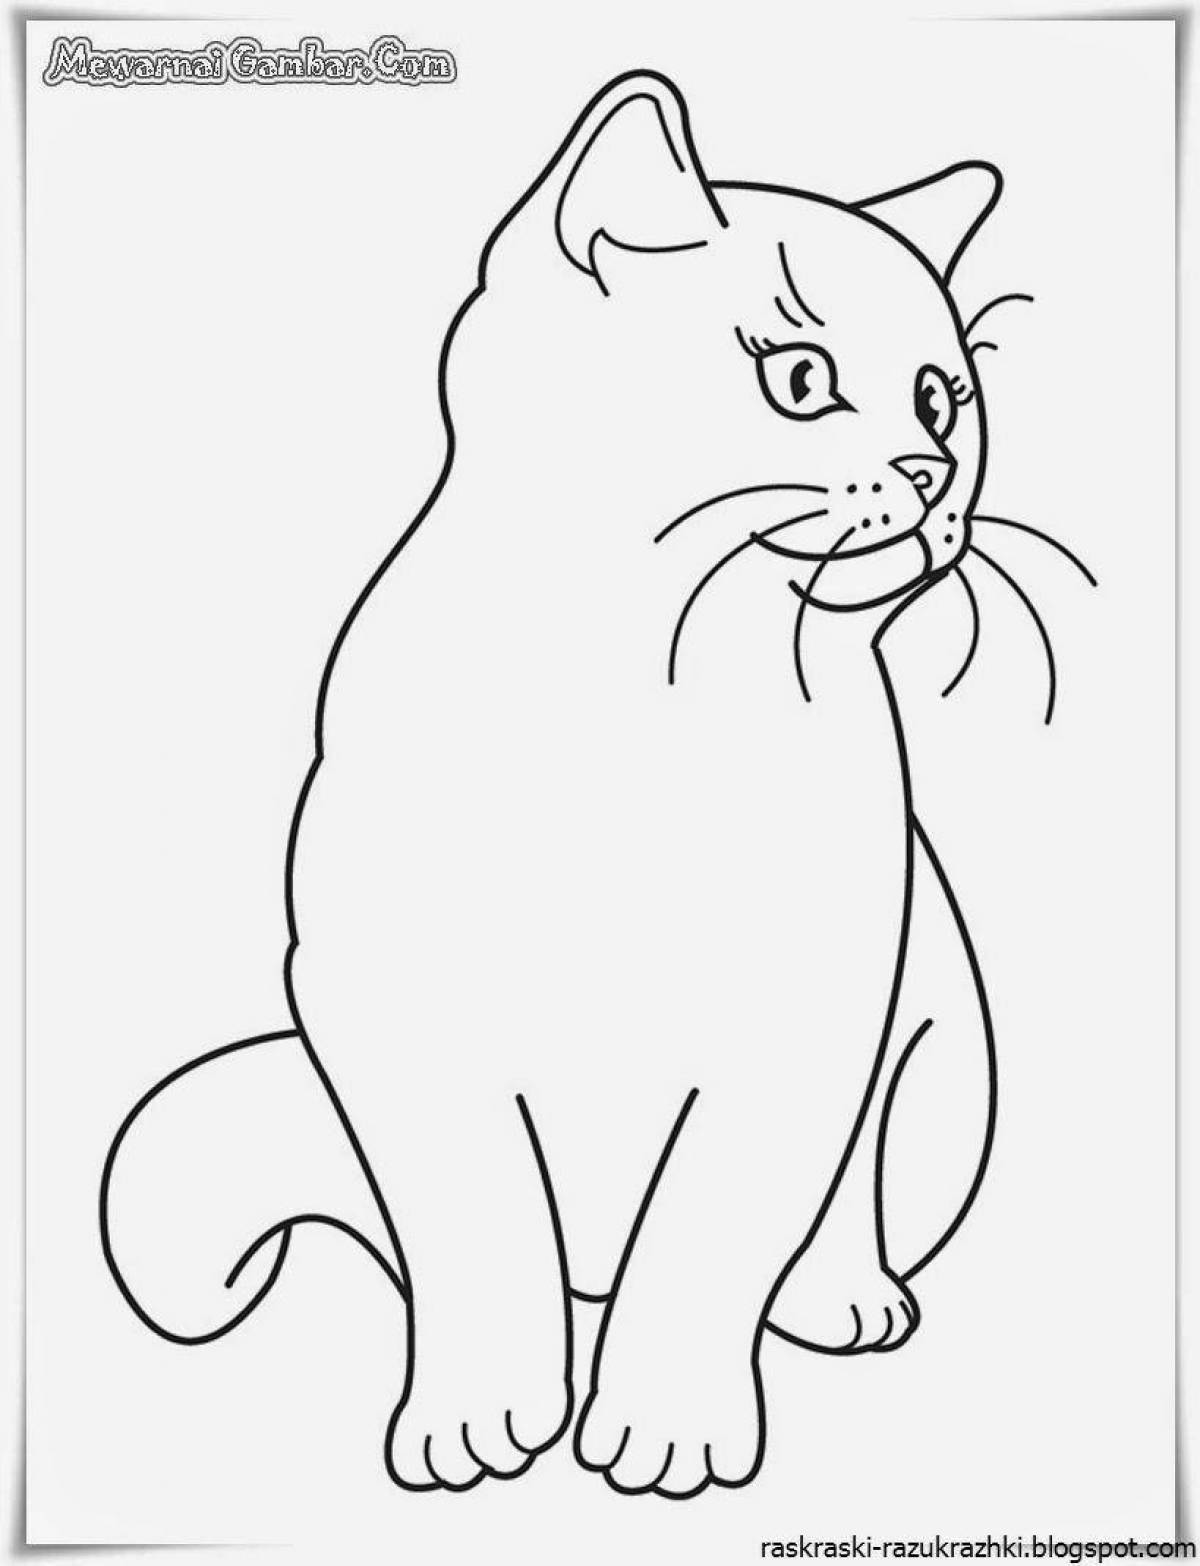 Раскраска симбочка распечатать. Раскраска кот. Кошка раскраска для детей. Котенок рисунок для раскрашивания. Раскраски для детей КЛТ.